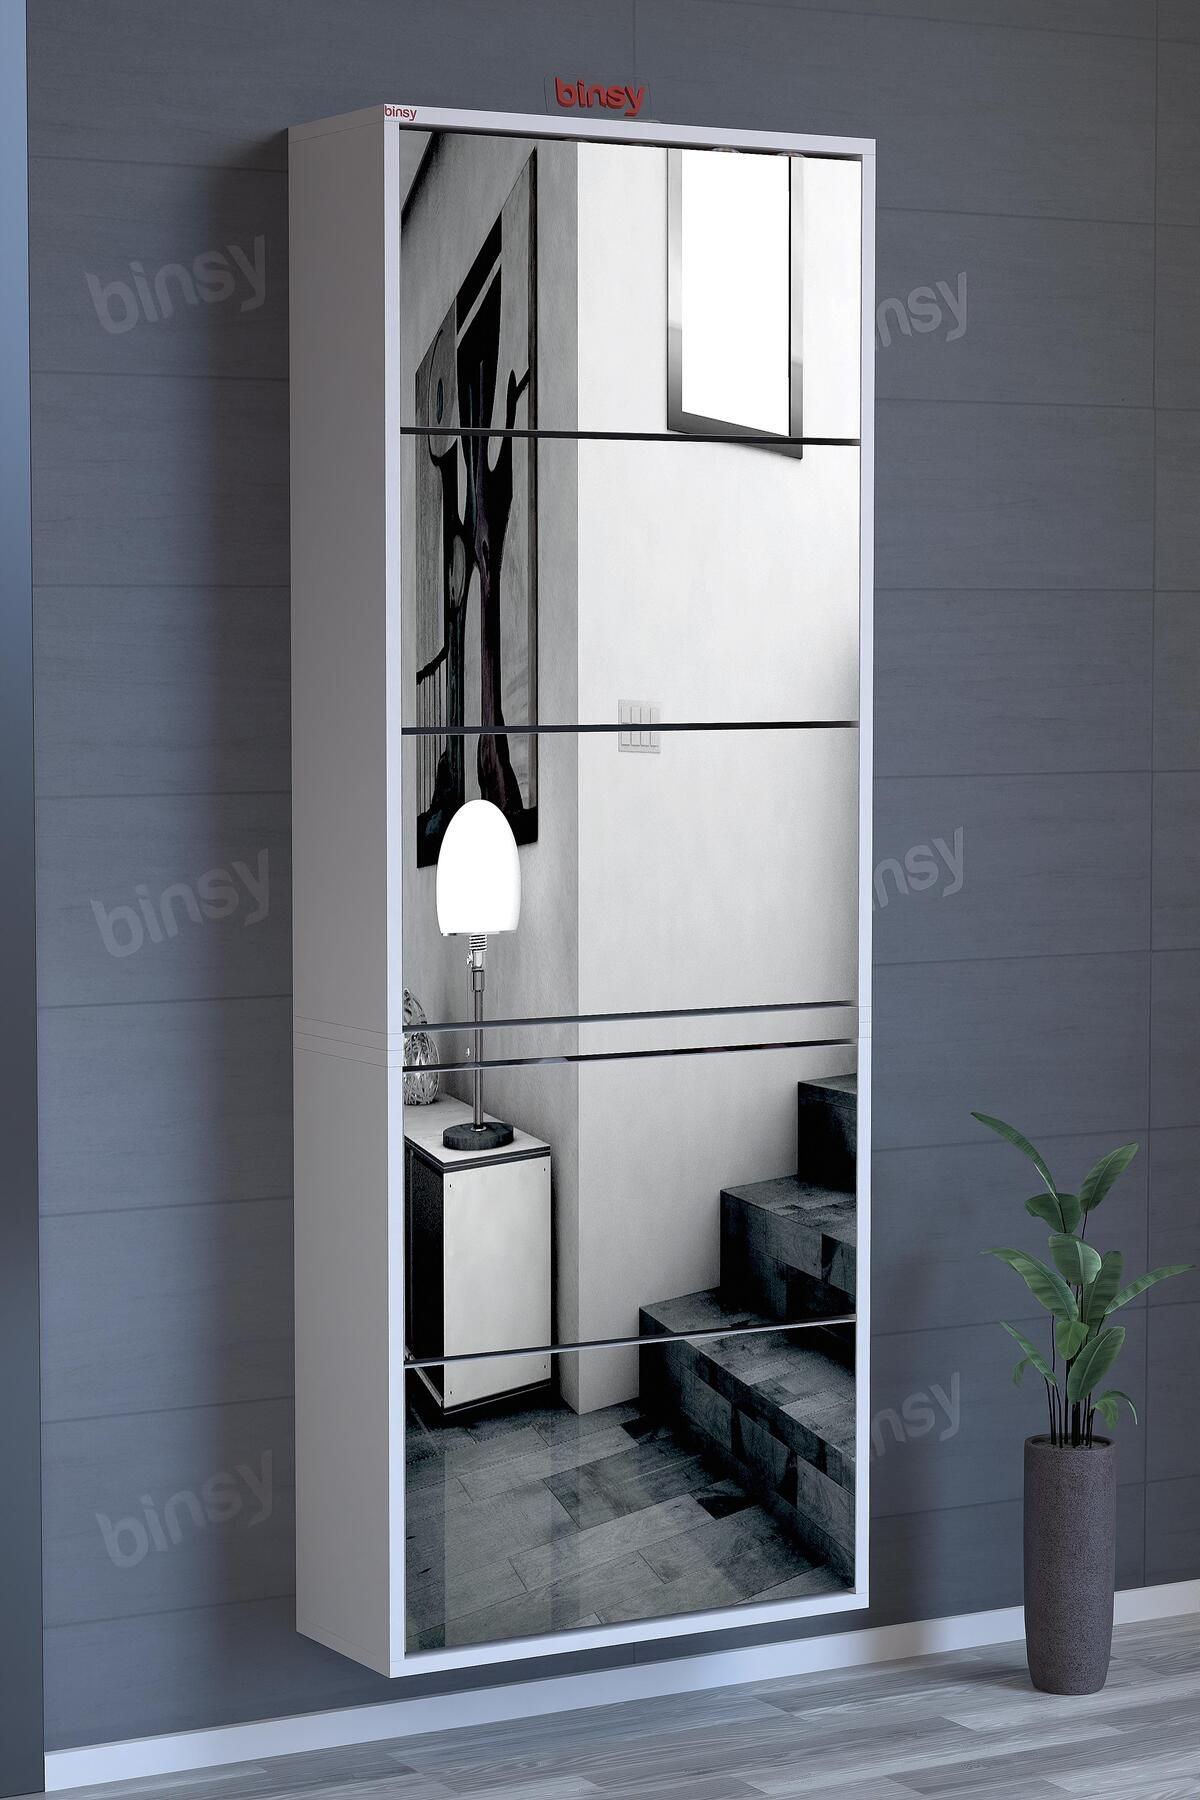 Binsy Avrasya Düşer Kapaklı 5 Raflı Kapaklı Elit Aynalı Ayakkabılık Ve Boy Aynası Askılı 176 X 64cm Beyaz